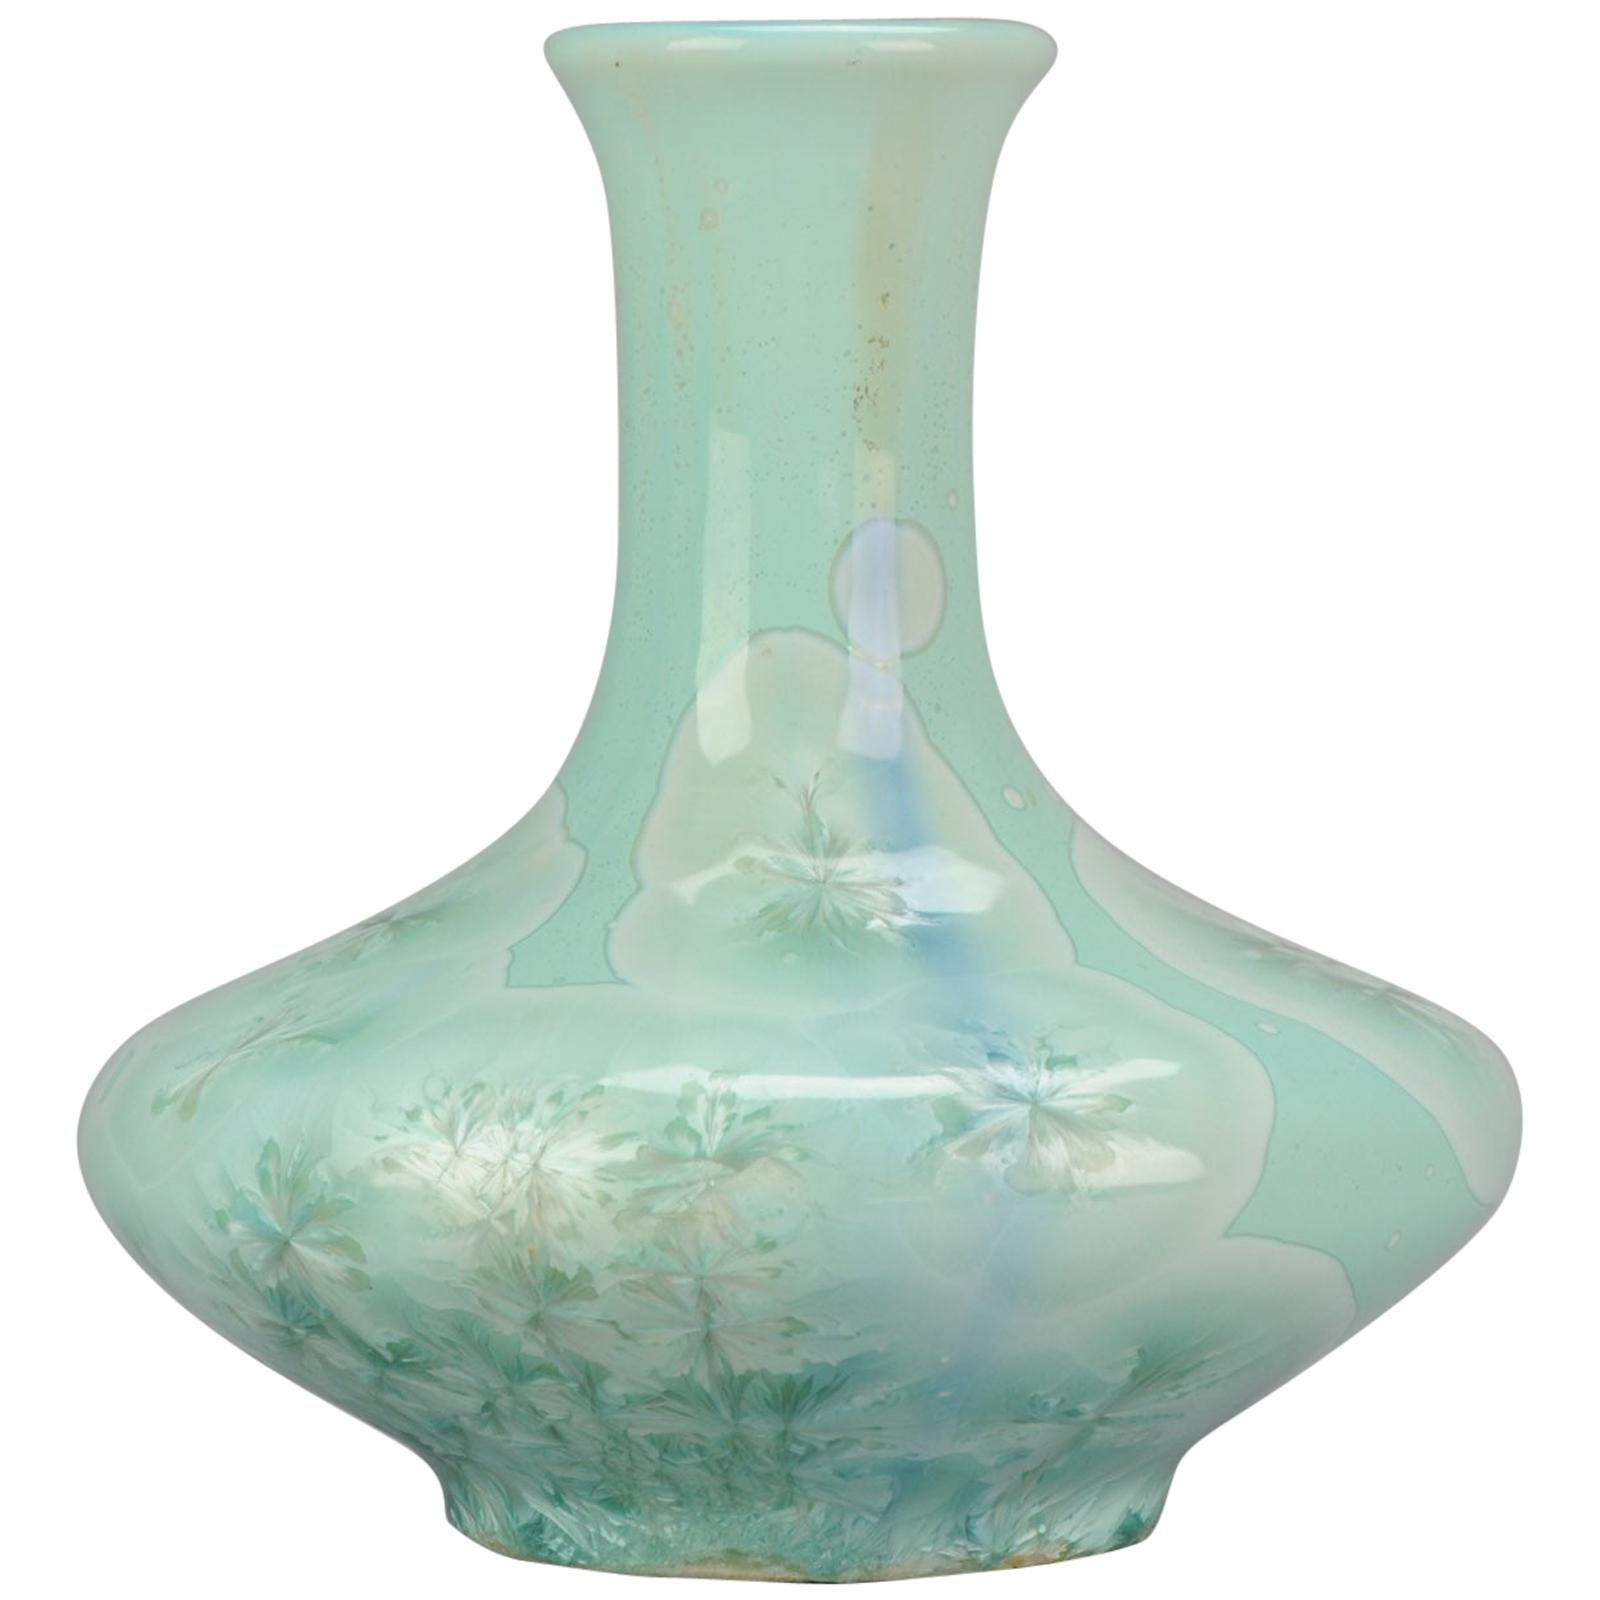 Shiwan 20th Century PRoC 1970-1980 Chinese Porcelain Vase Crystalline Glaz